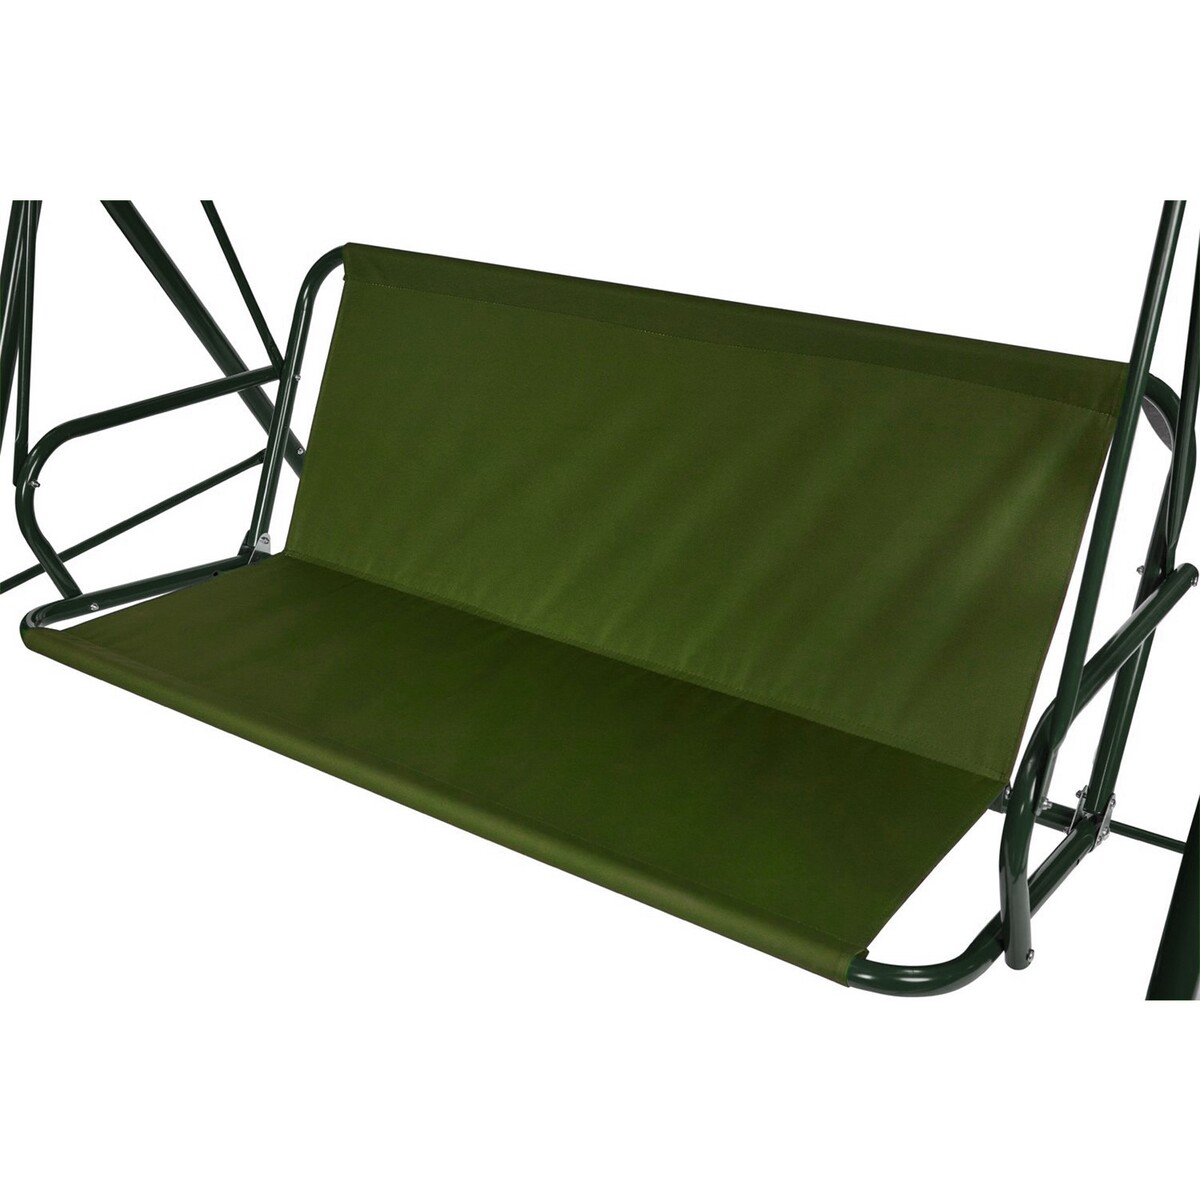 Усиленное тканевое сиденье для садовых качелей 170x52/49 см, оксфорд 600, олива No brand, цвет зеленый